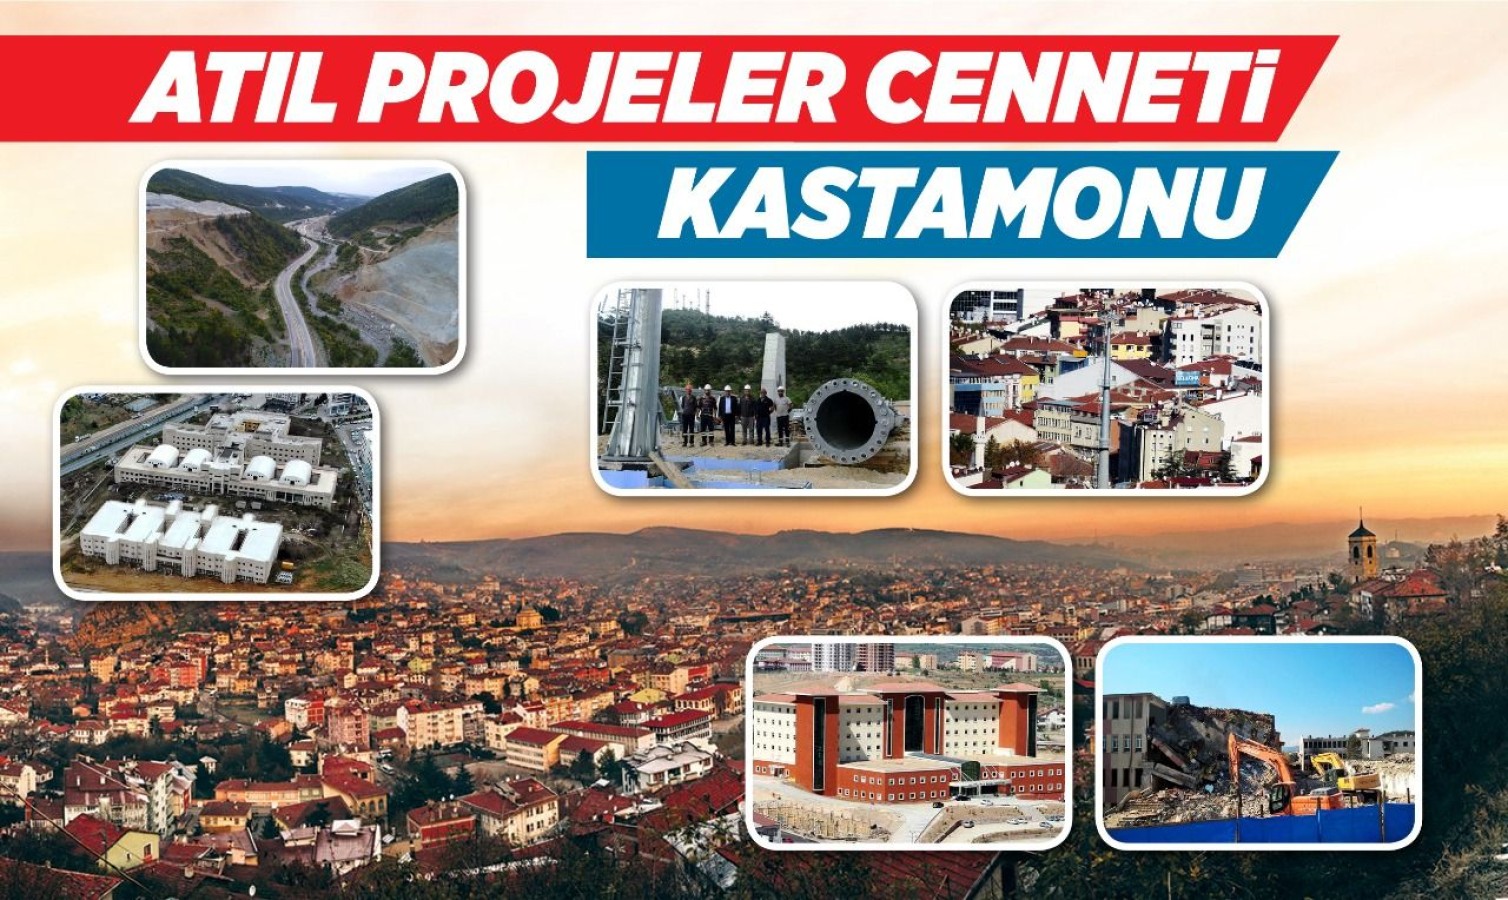 'Atıl projeler' cenneti Kastamonu!..